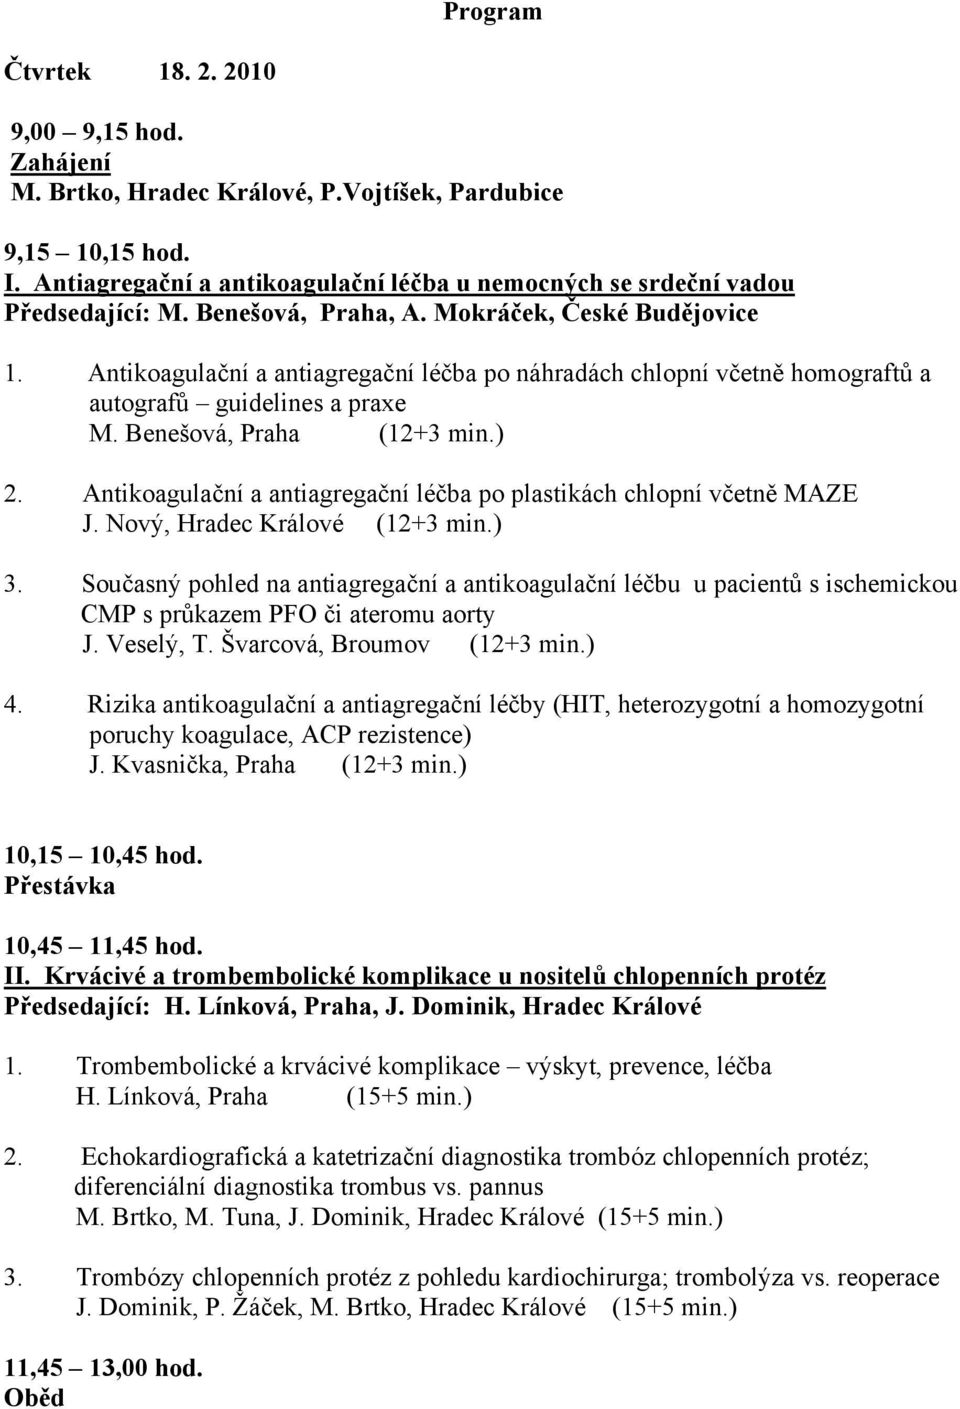 Antikoagulační a antiagregační léčba po náhradách chlopní včetně homograftů a autografů guidelines a praxe M. Benešová, Praha (12+3 min.) 2.